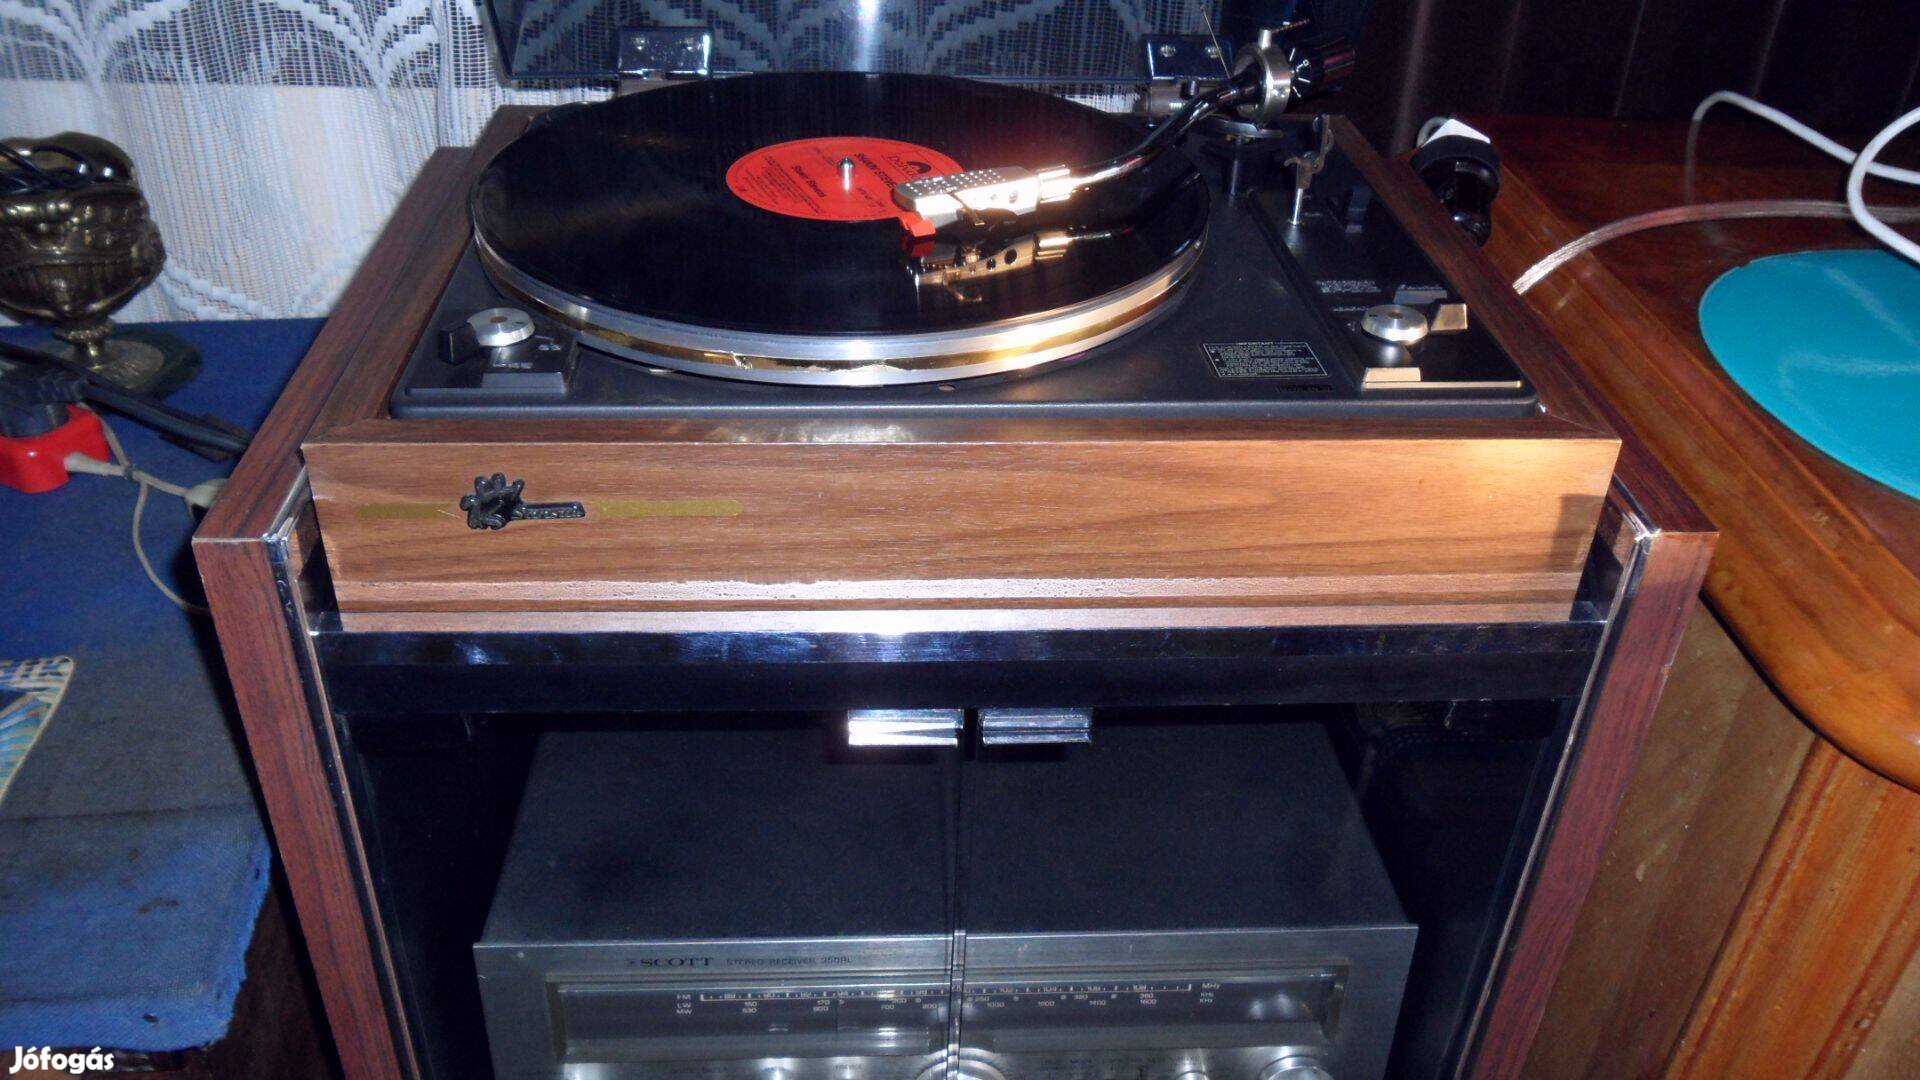 TED Nugent USA rocksztár teljesen új Vinyl LP album, nem után gyártott